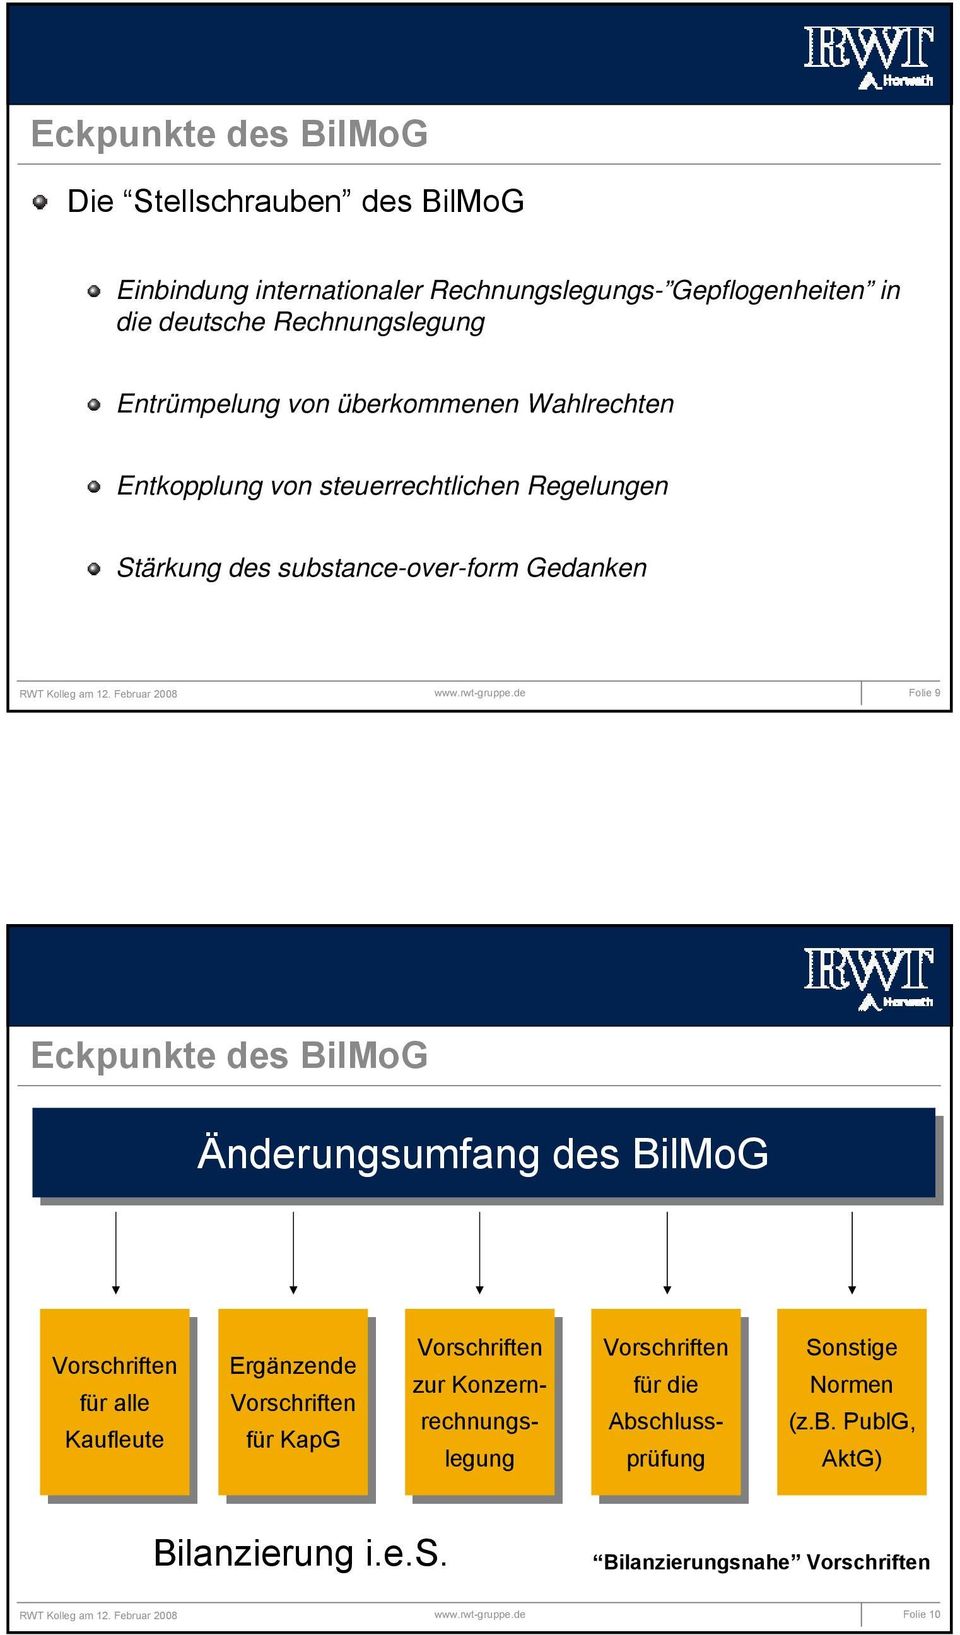 BilMoG Änderungsumfang des BilMoG Vorschriften für füralle Kaufleute Ergänzende Vorschriften für fürkapg Vorschriften zur zurkonzern- rechnungs- legung